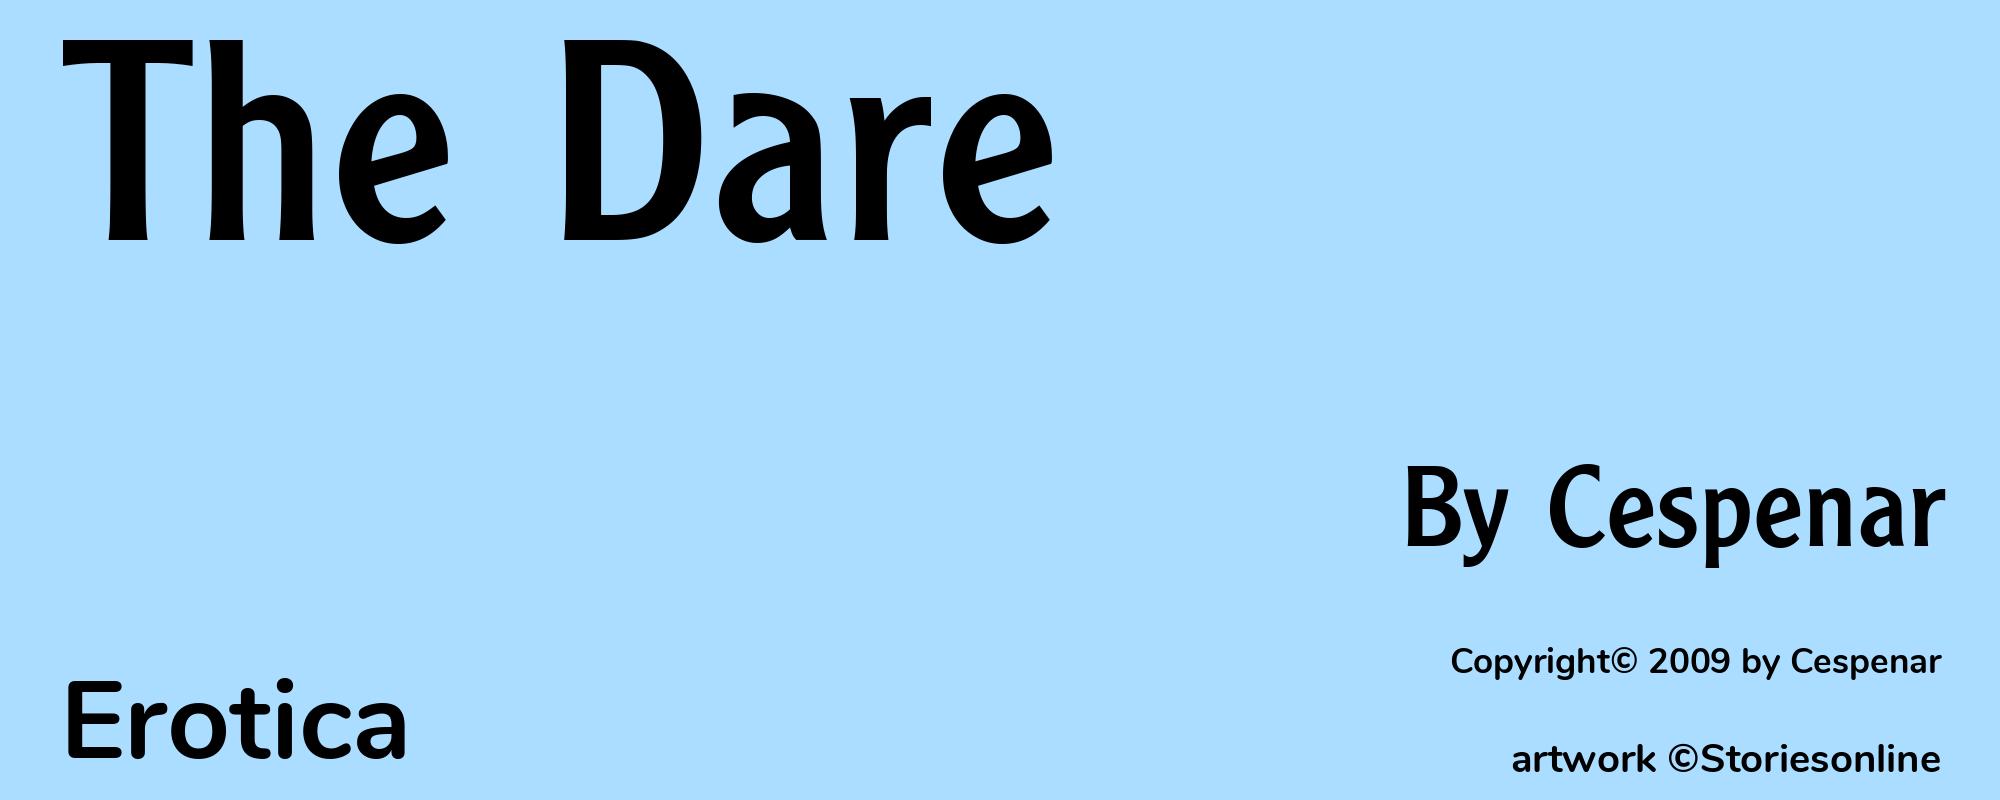 The Dare - Cover